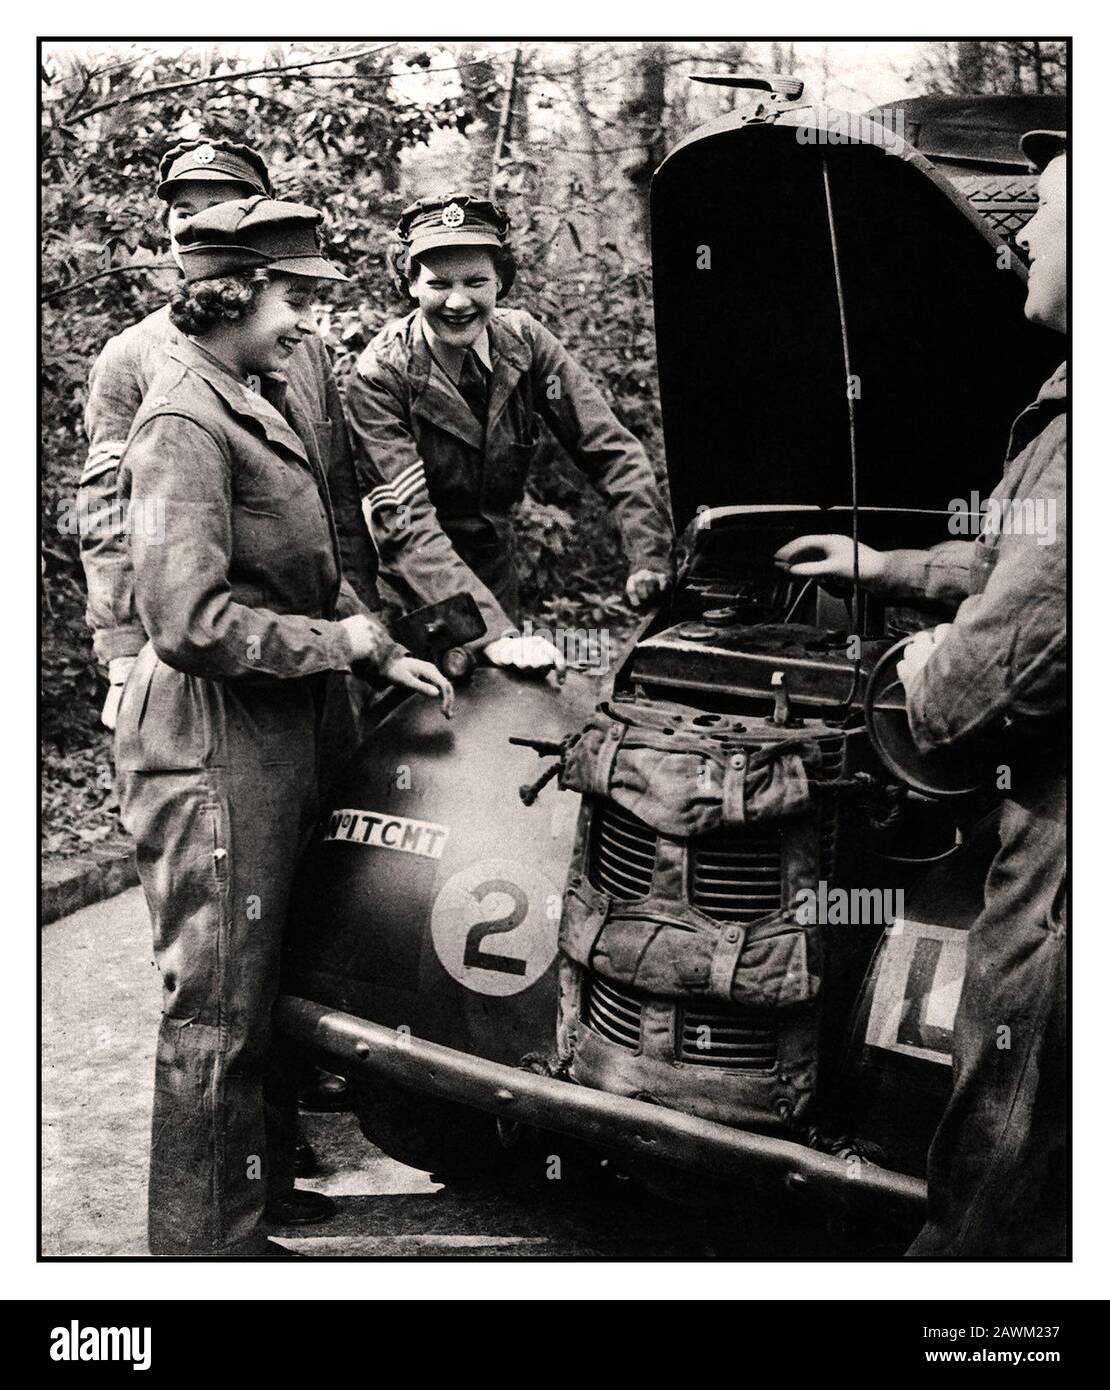 La principessa Elizabeth ATS 1940's World War II Car Mechanic. HRH Princess Elizabeth (futura Regina Elisabetta II) nella sua uniforme del ATS il Servizio Territoriale ausiliario un ramo ausiliario dell'esercito femminile, con altri membri sorridenti del servizio ATS che lavorano su un veicolo militare dell'esercito britannico. Foto Stock